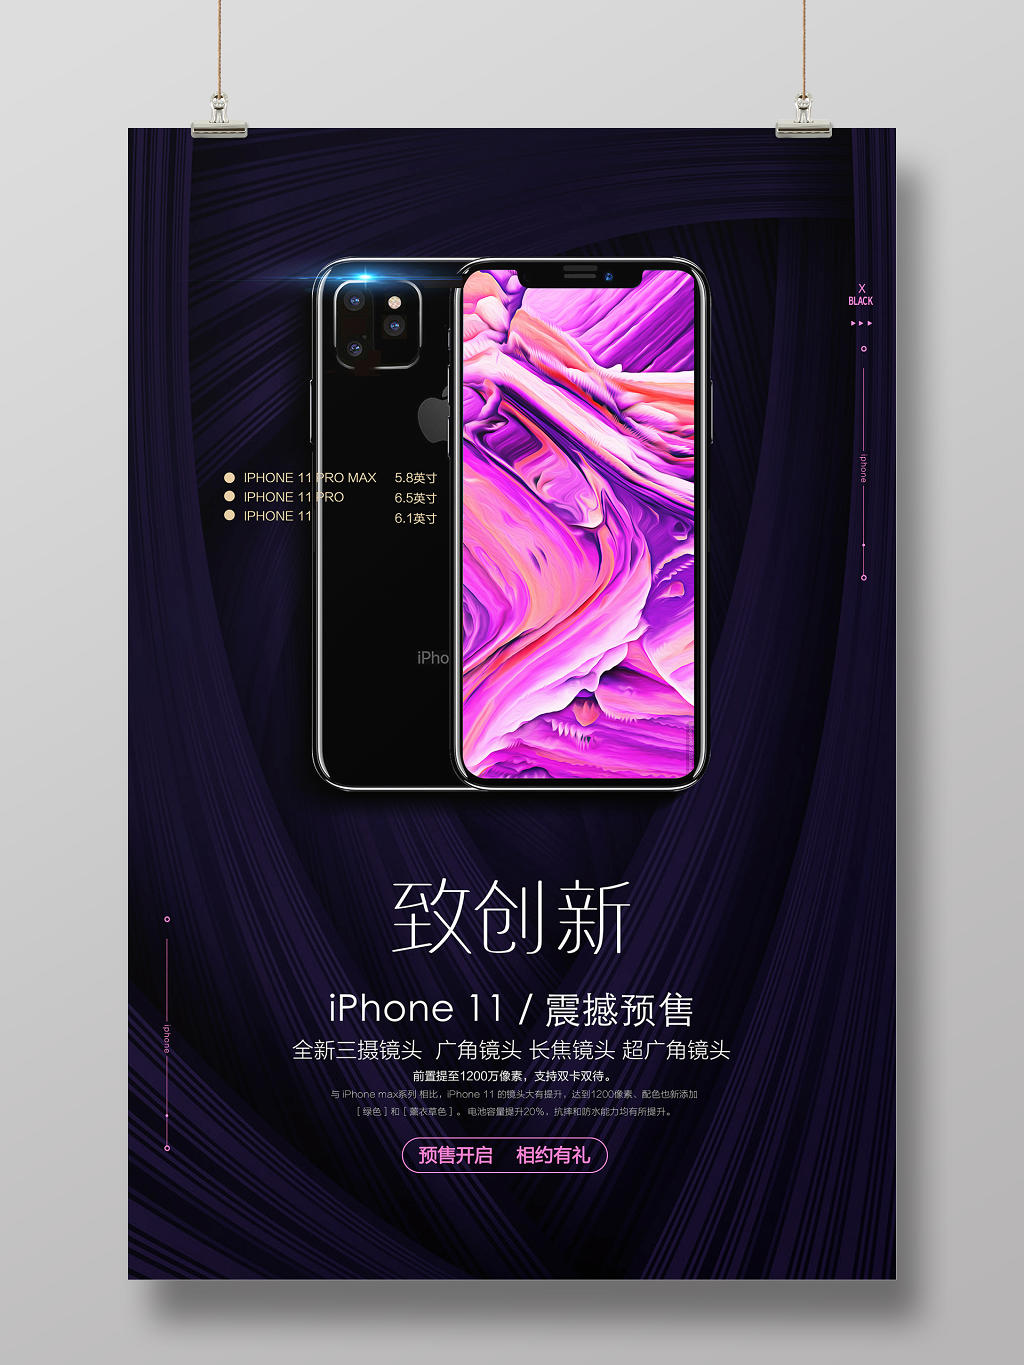 iphone11苹果11新品广告宣传海报设计